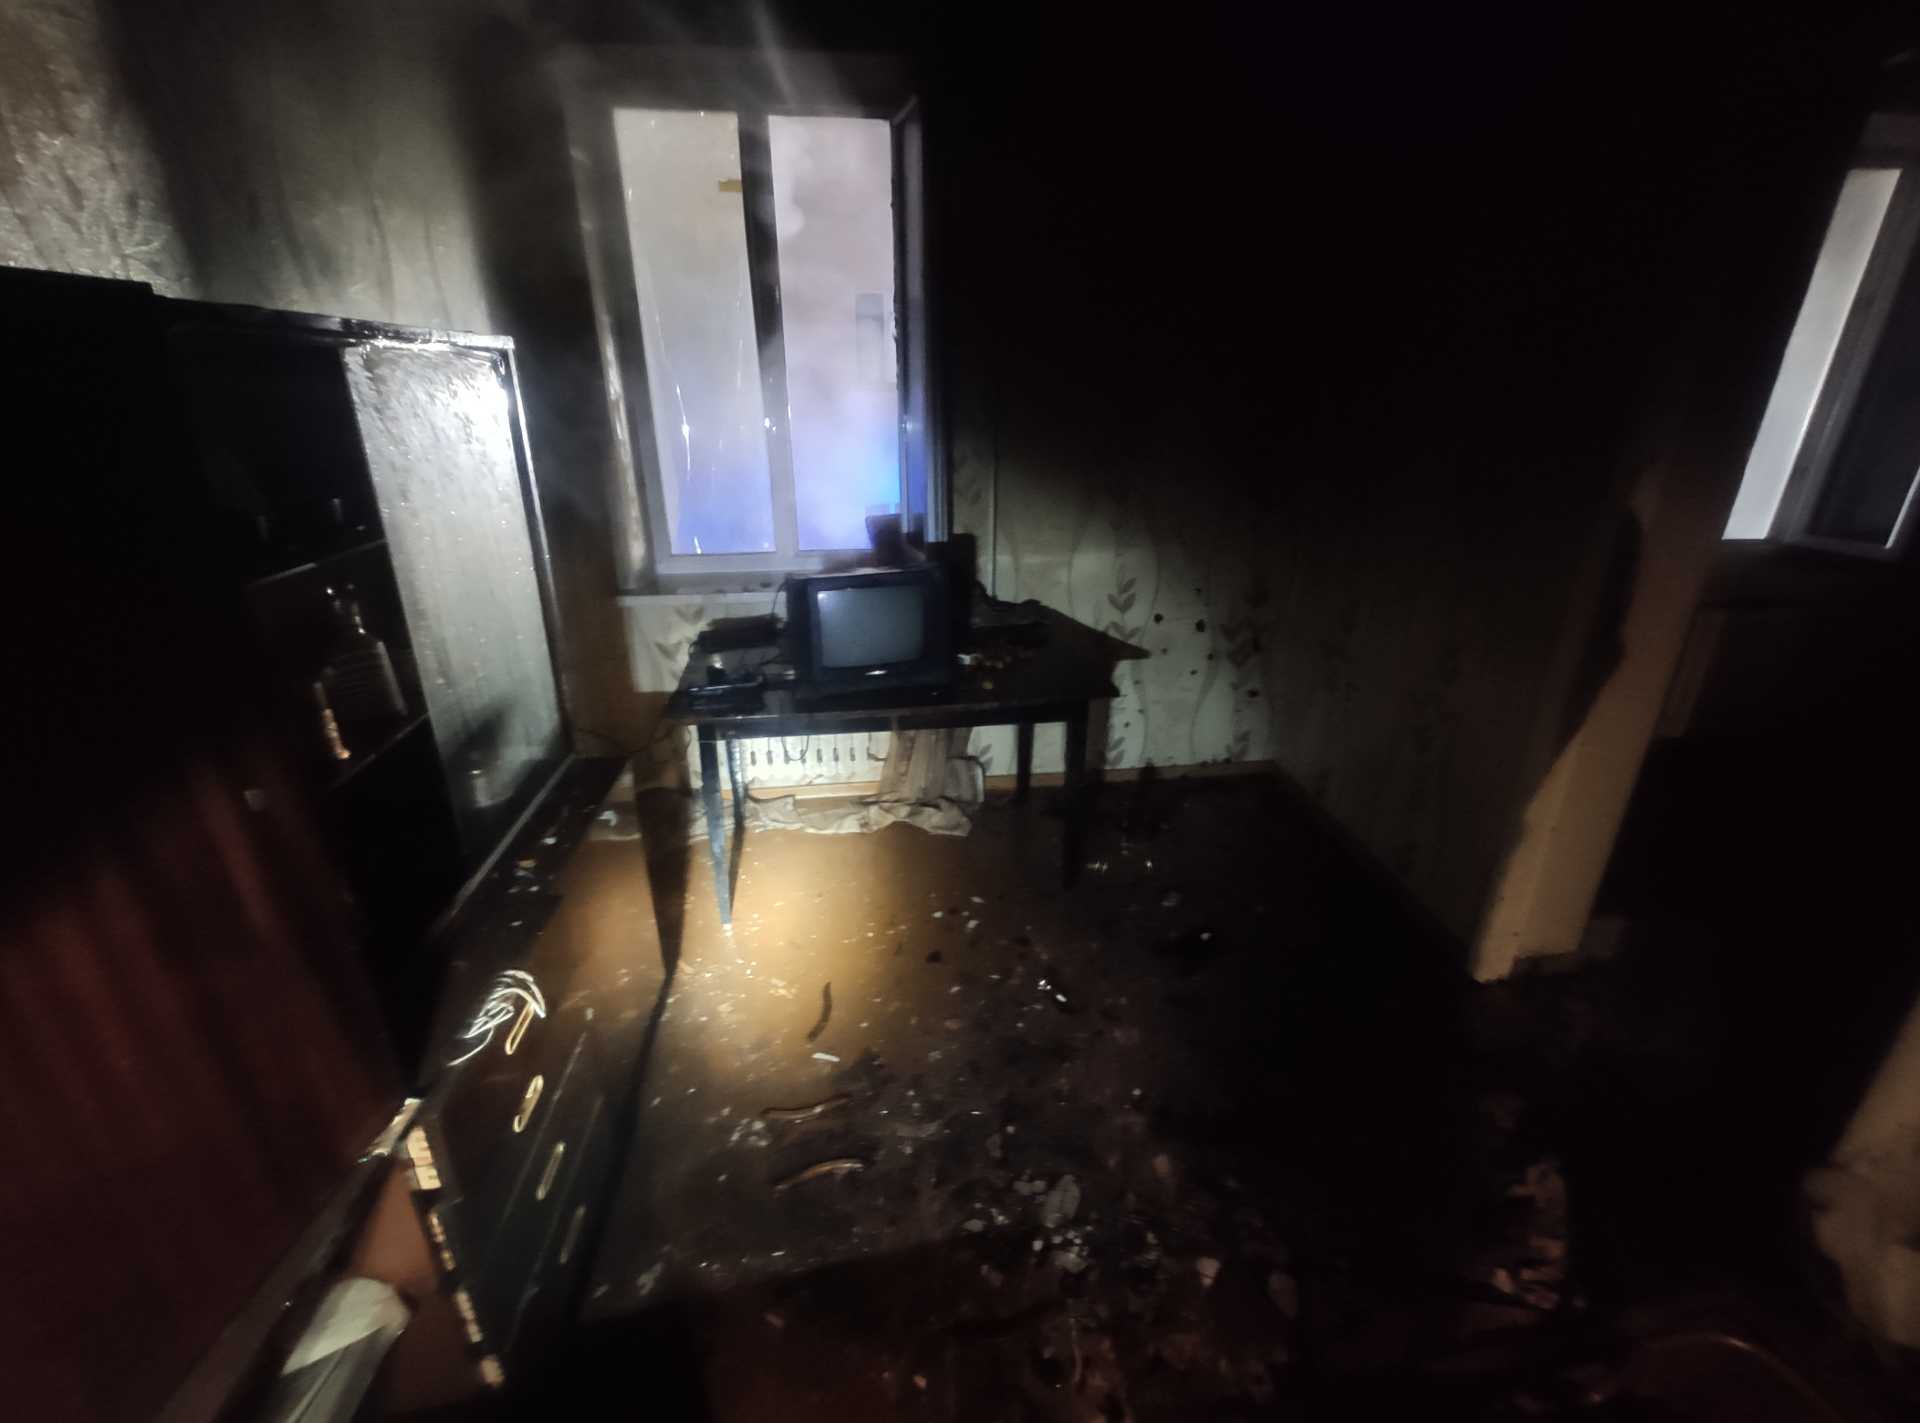 В Пинском районе случился пожар в хозяйственном строении, в Пинске – в квартире